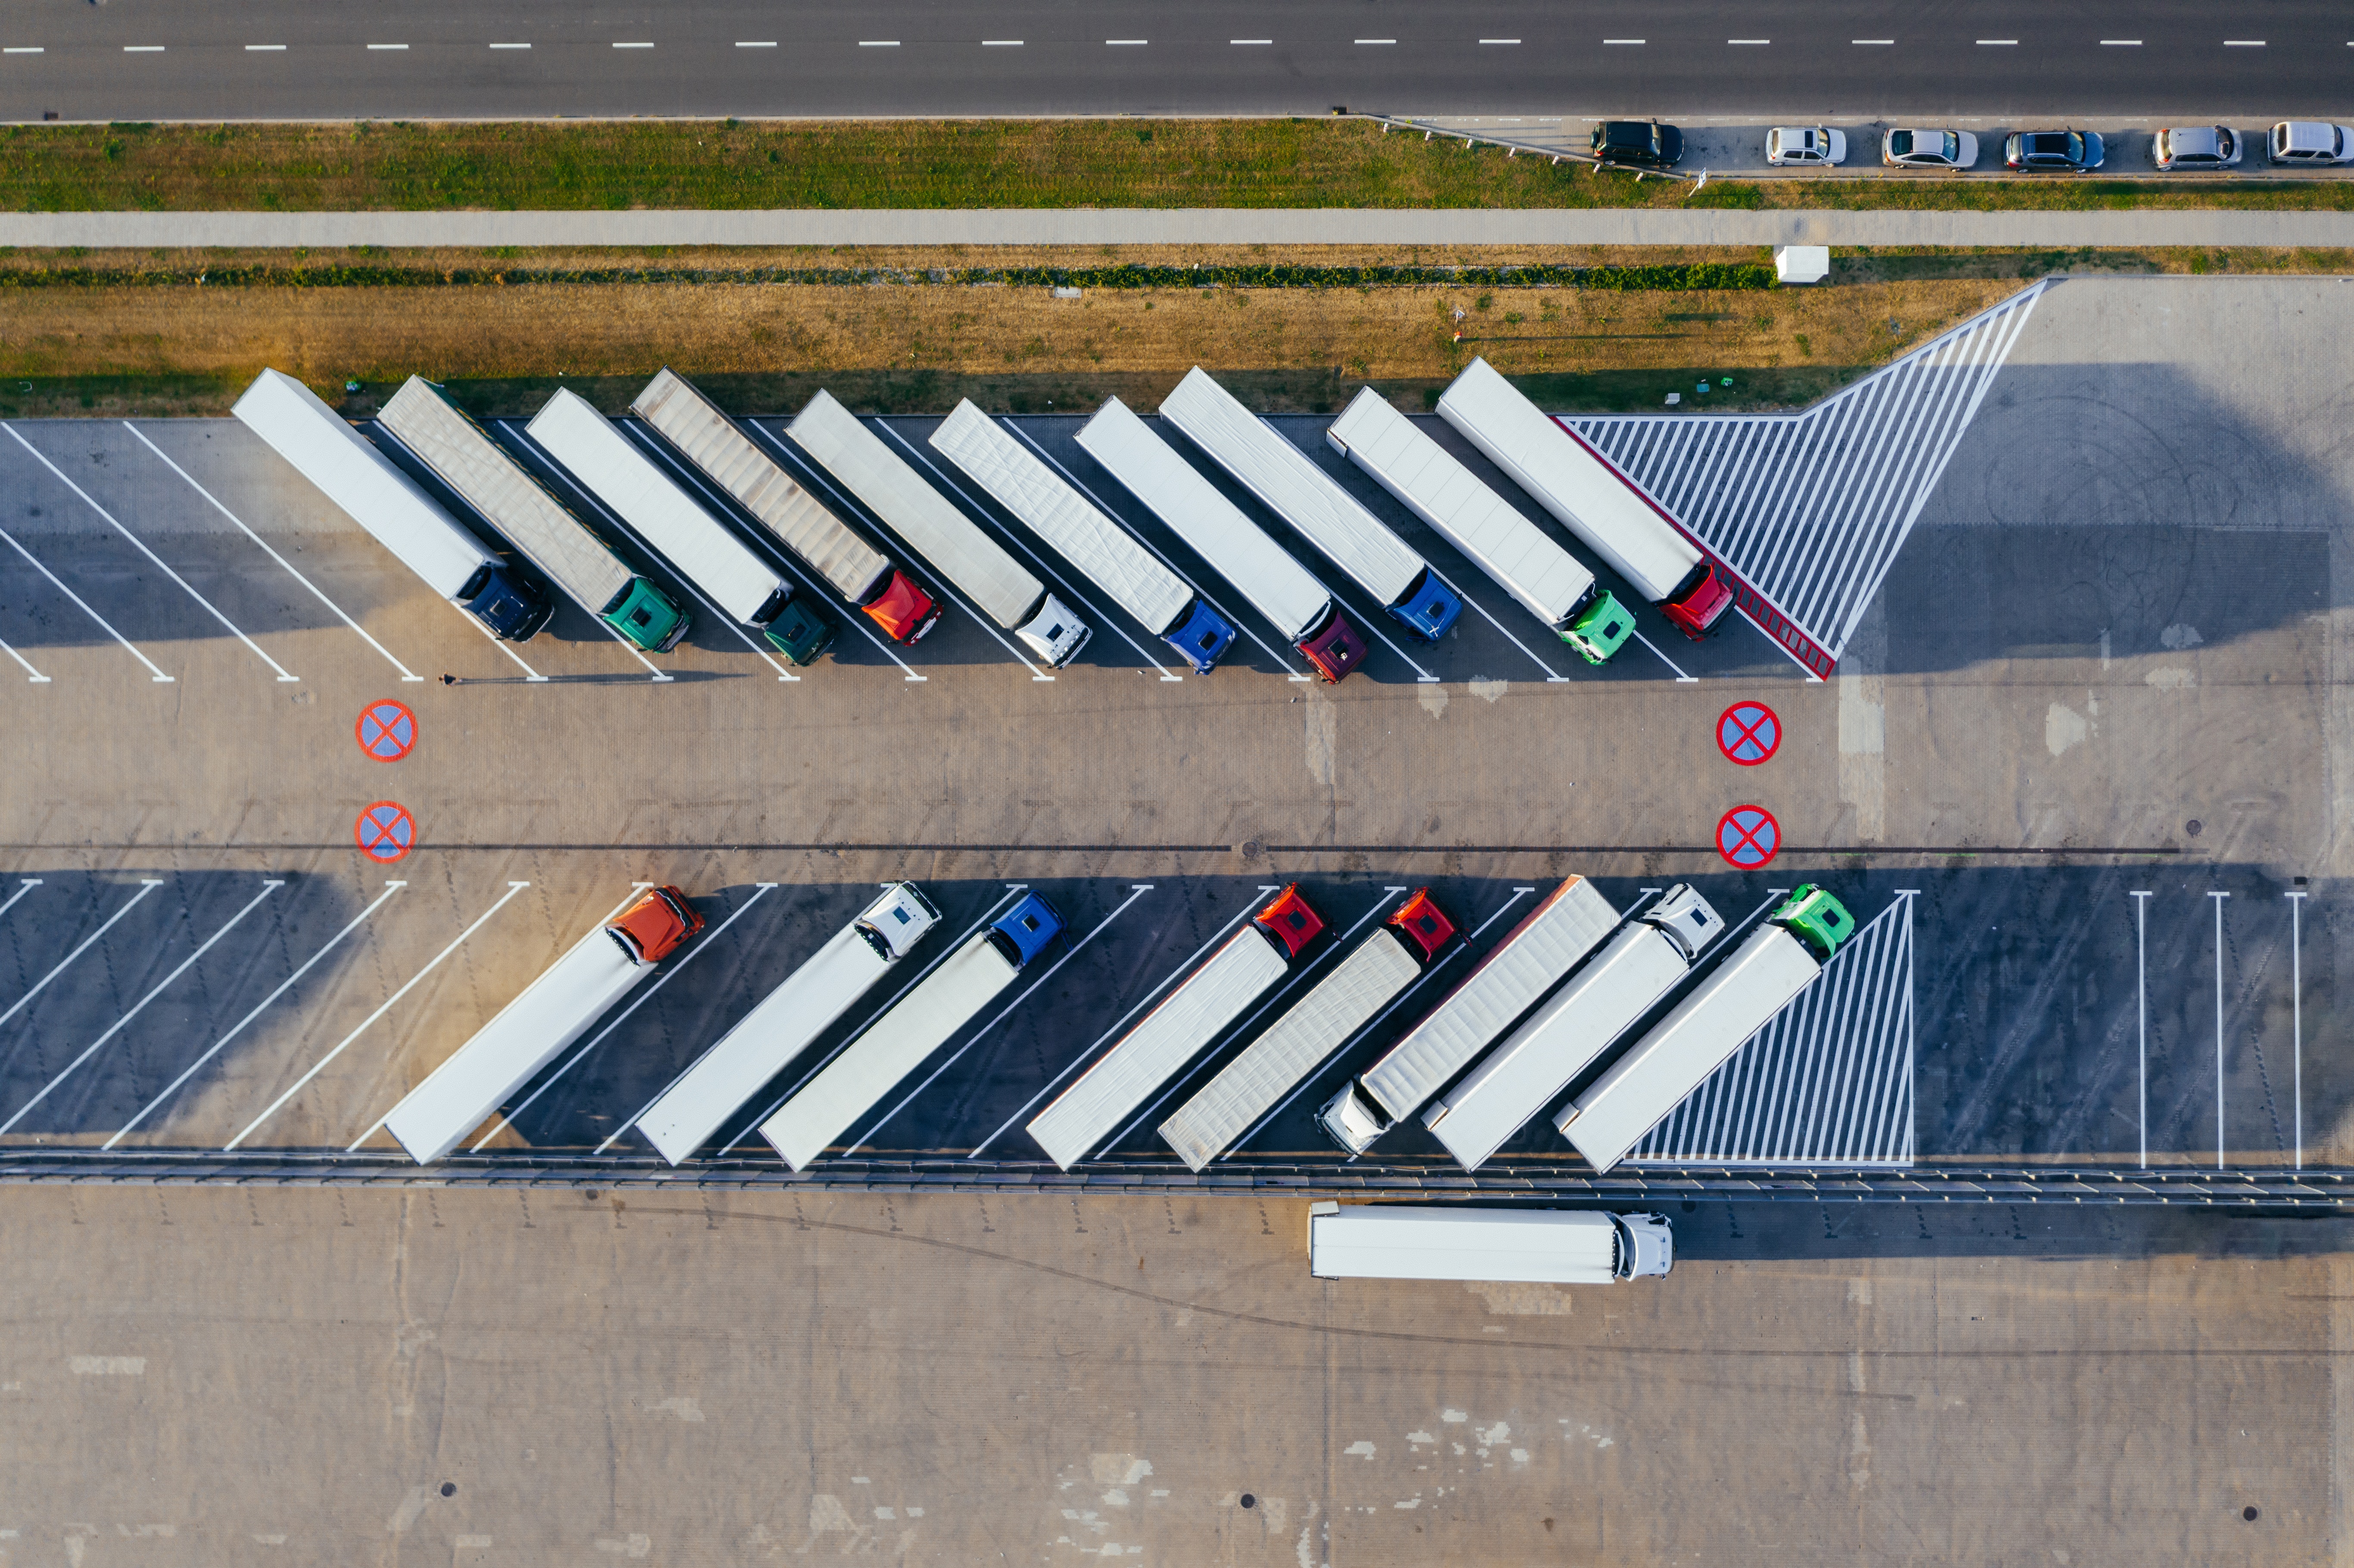 Imagen aerea de una flota de camiones